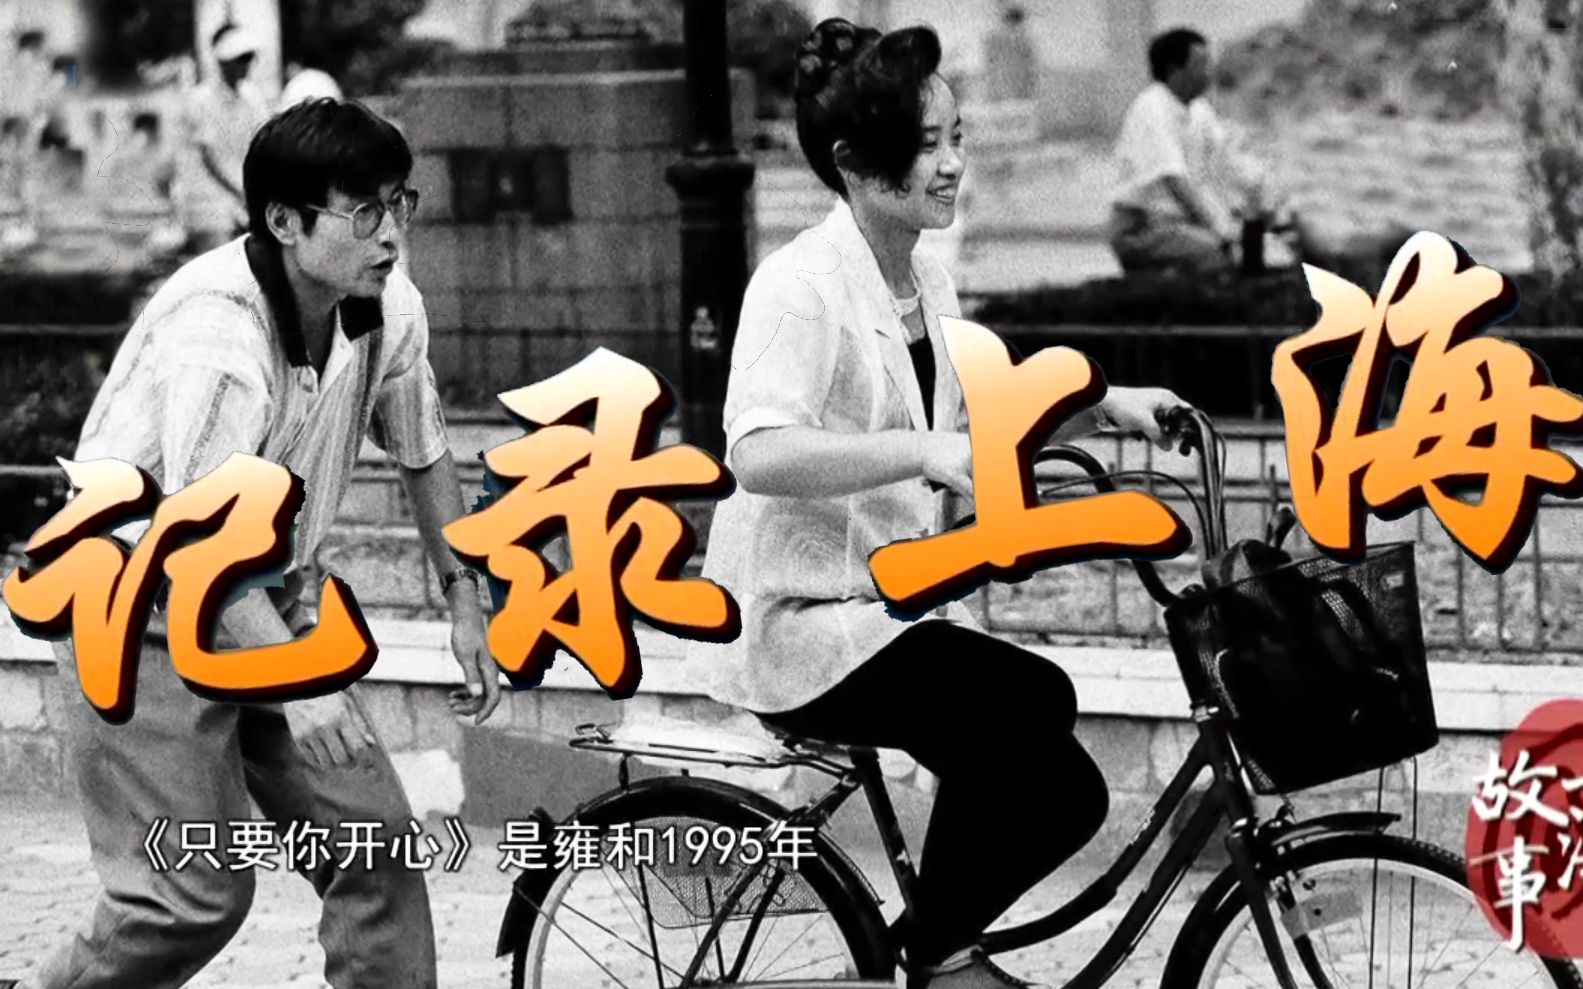 【纪录片/城市】记录上海 (上下)【搬运】